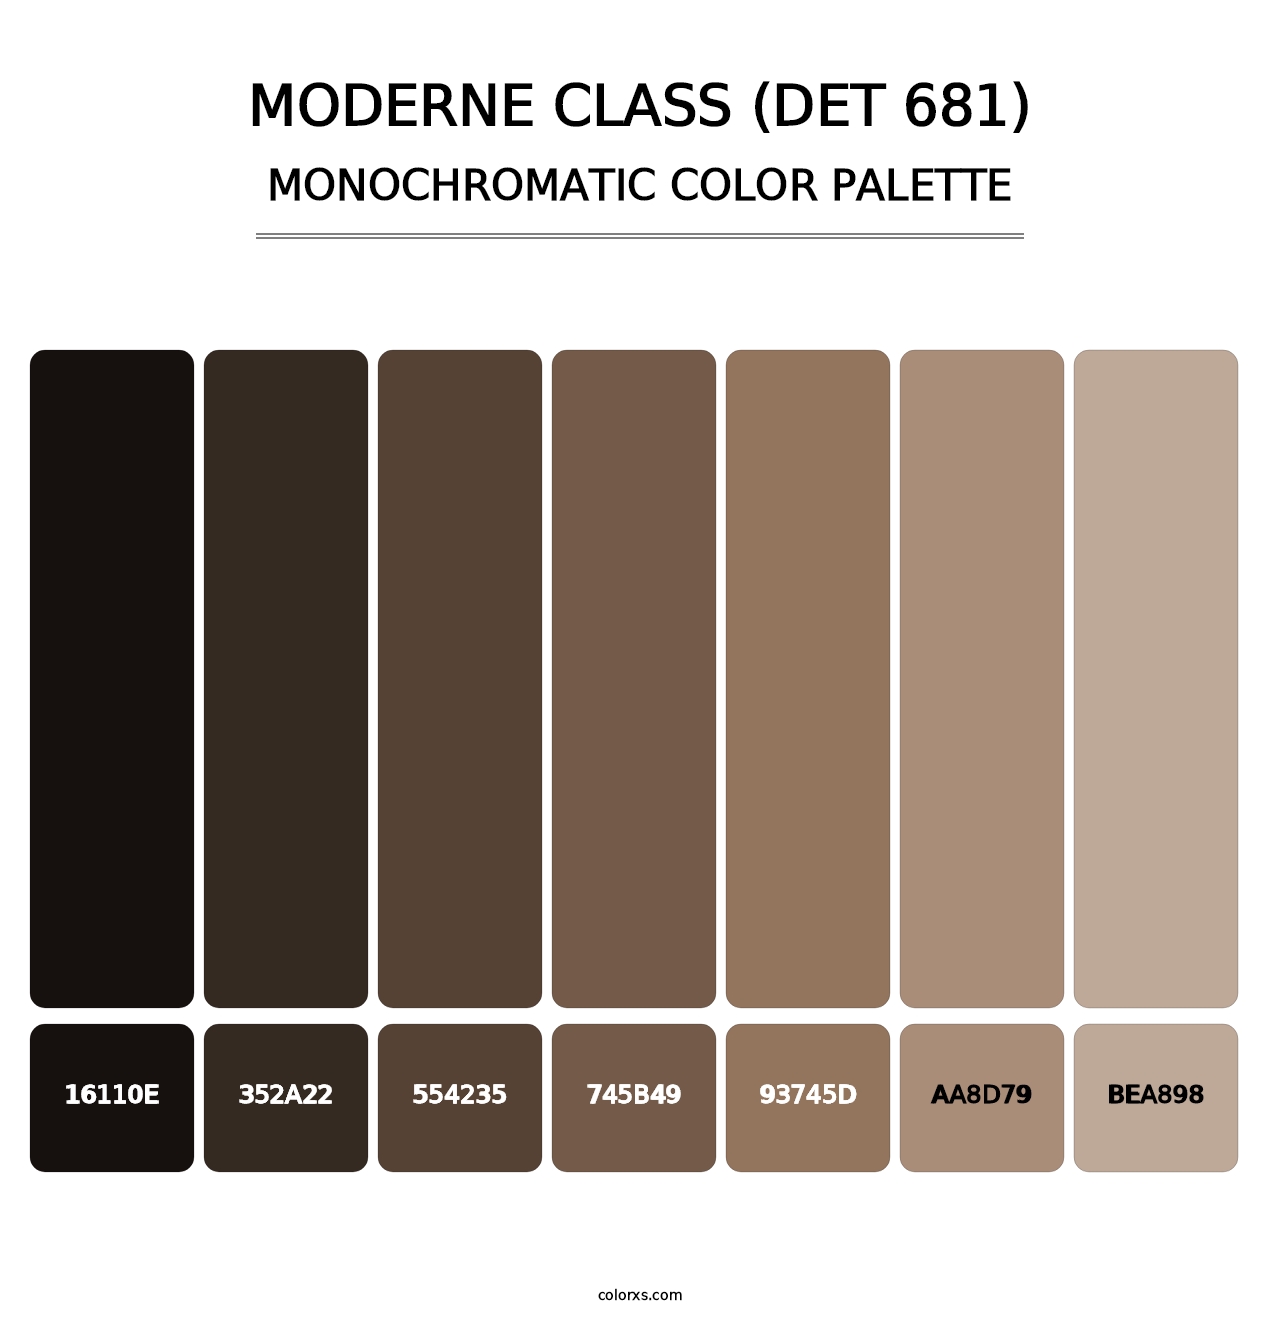 Moderne Class (DET 681) - Monochromatic Color Palette